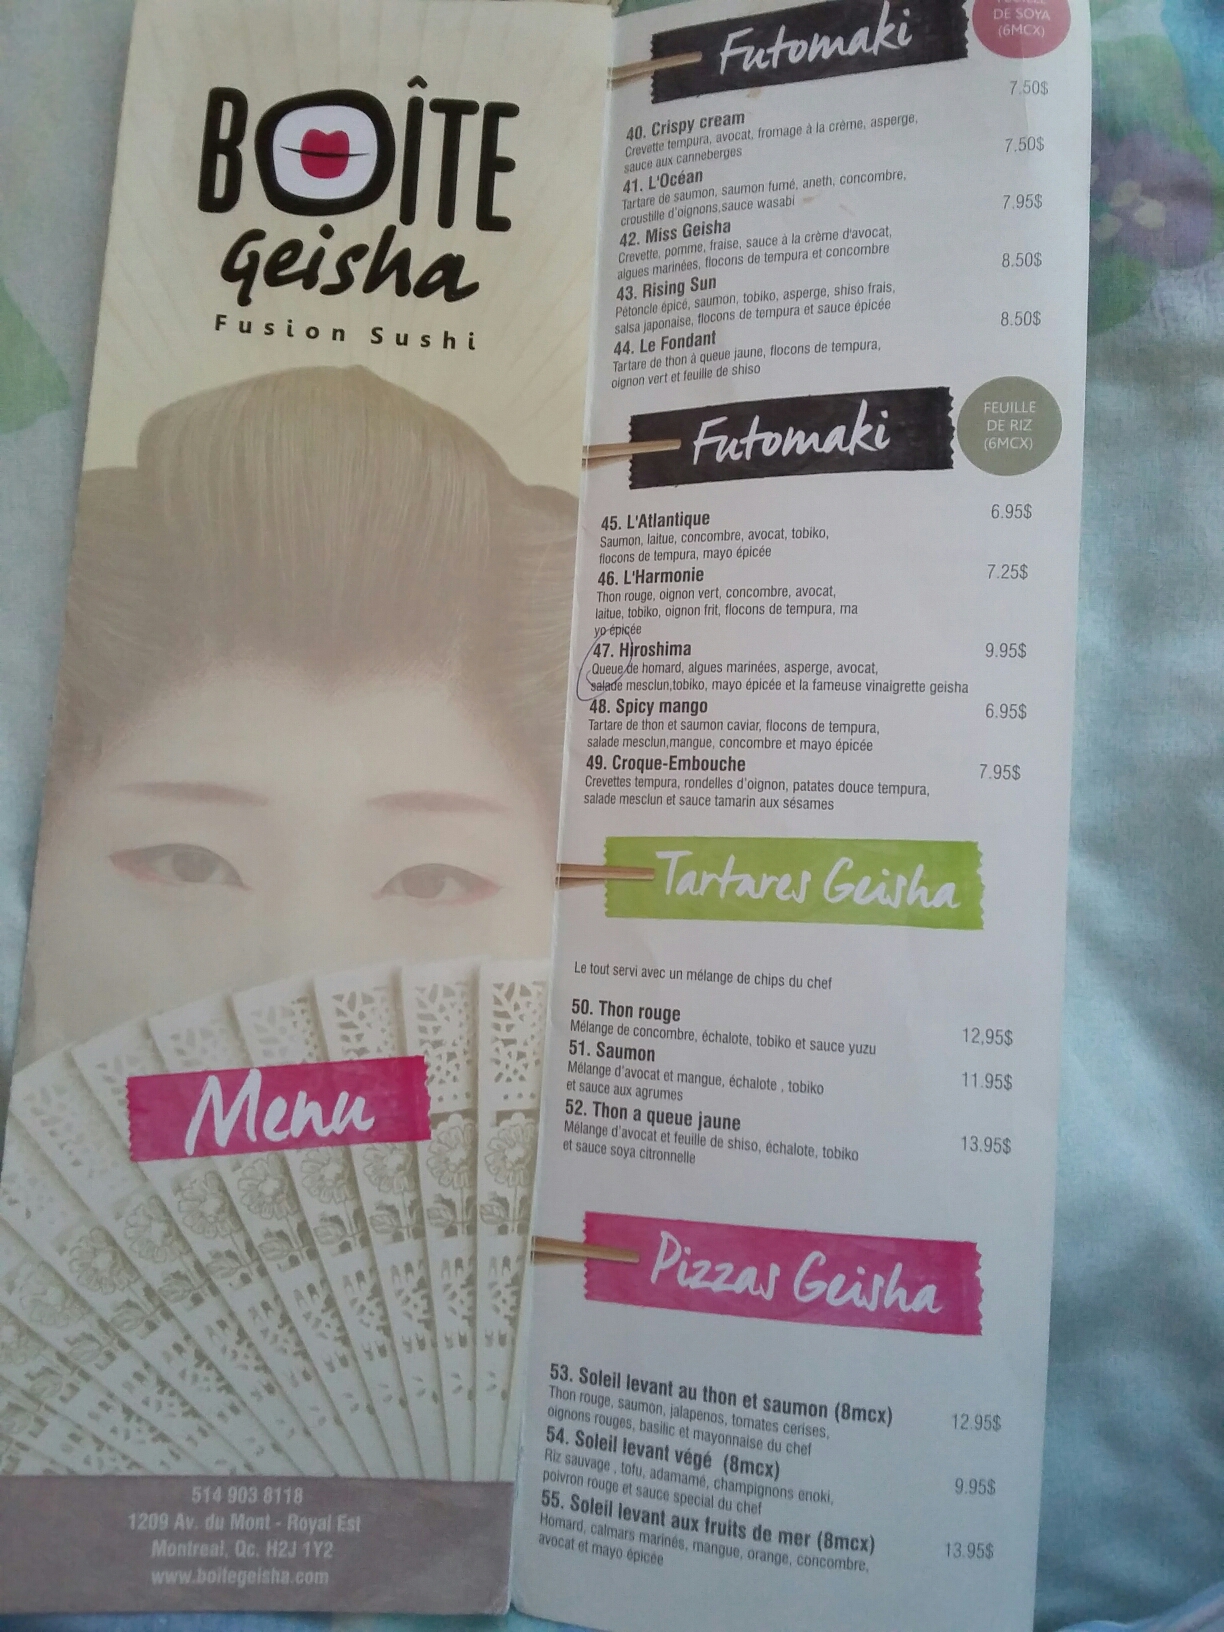 Boite Geisha - Restaurant